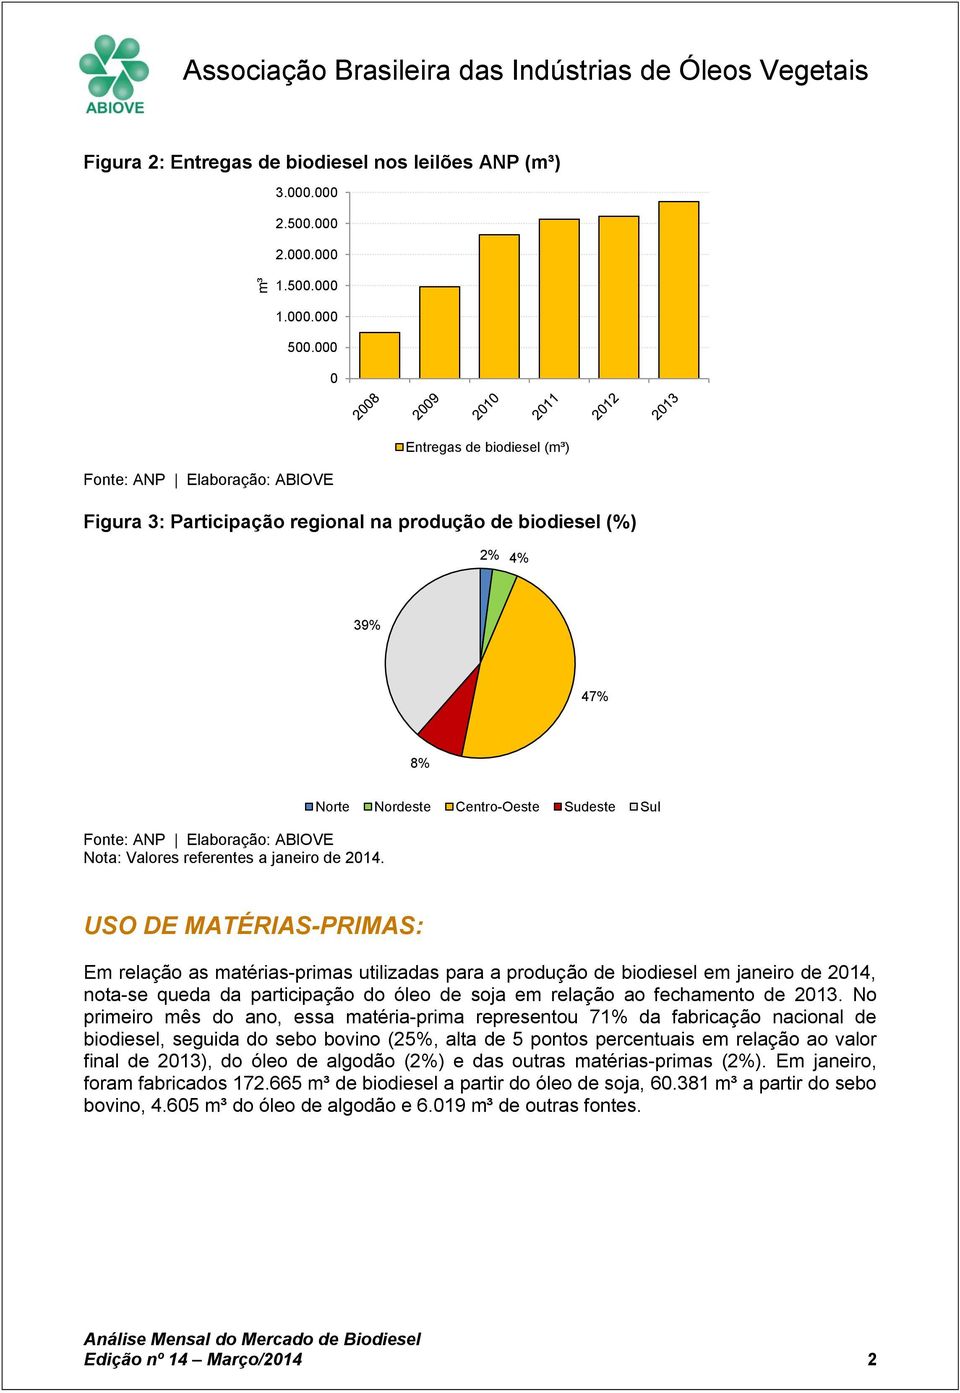 Norte Nordeste Centro-Oeste Sudeste Sul USO DE MATÉRIAS-PRIMAS: Em relação as matérias-primas utilizadas para a produção de biodiesel em janeiro de 214, nota-se queda da participação do óleo de soja